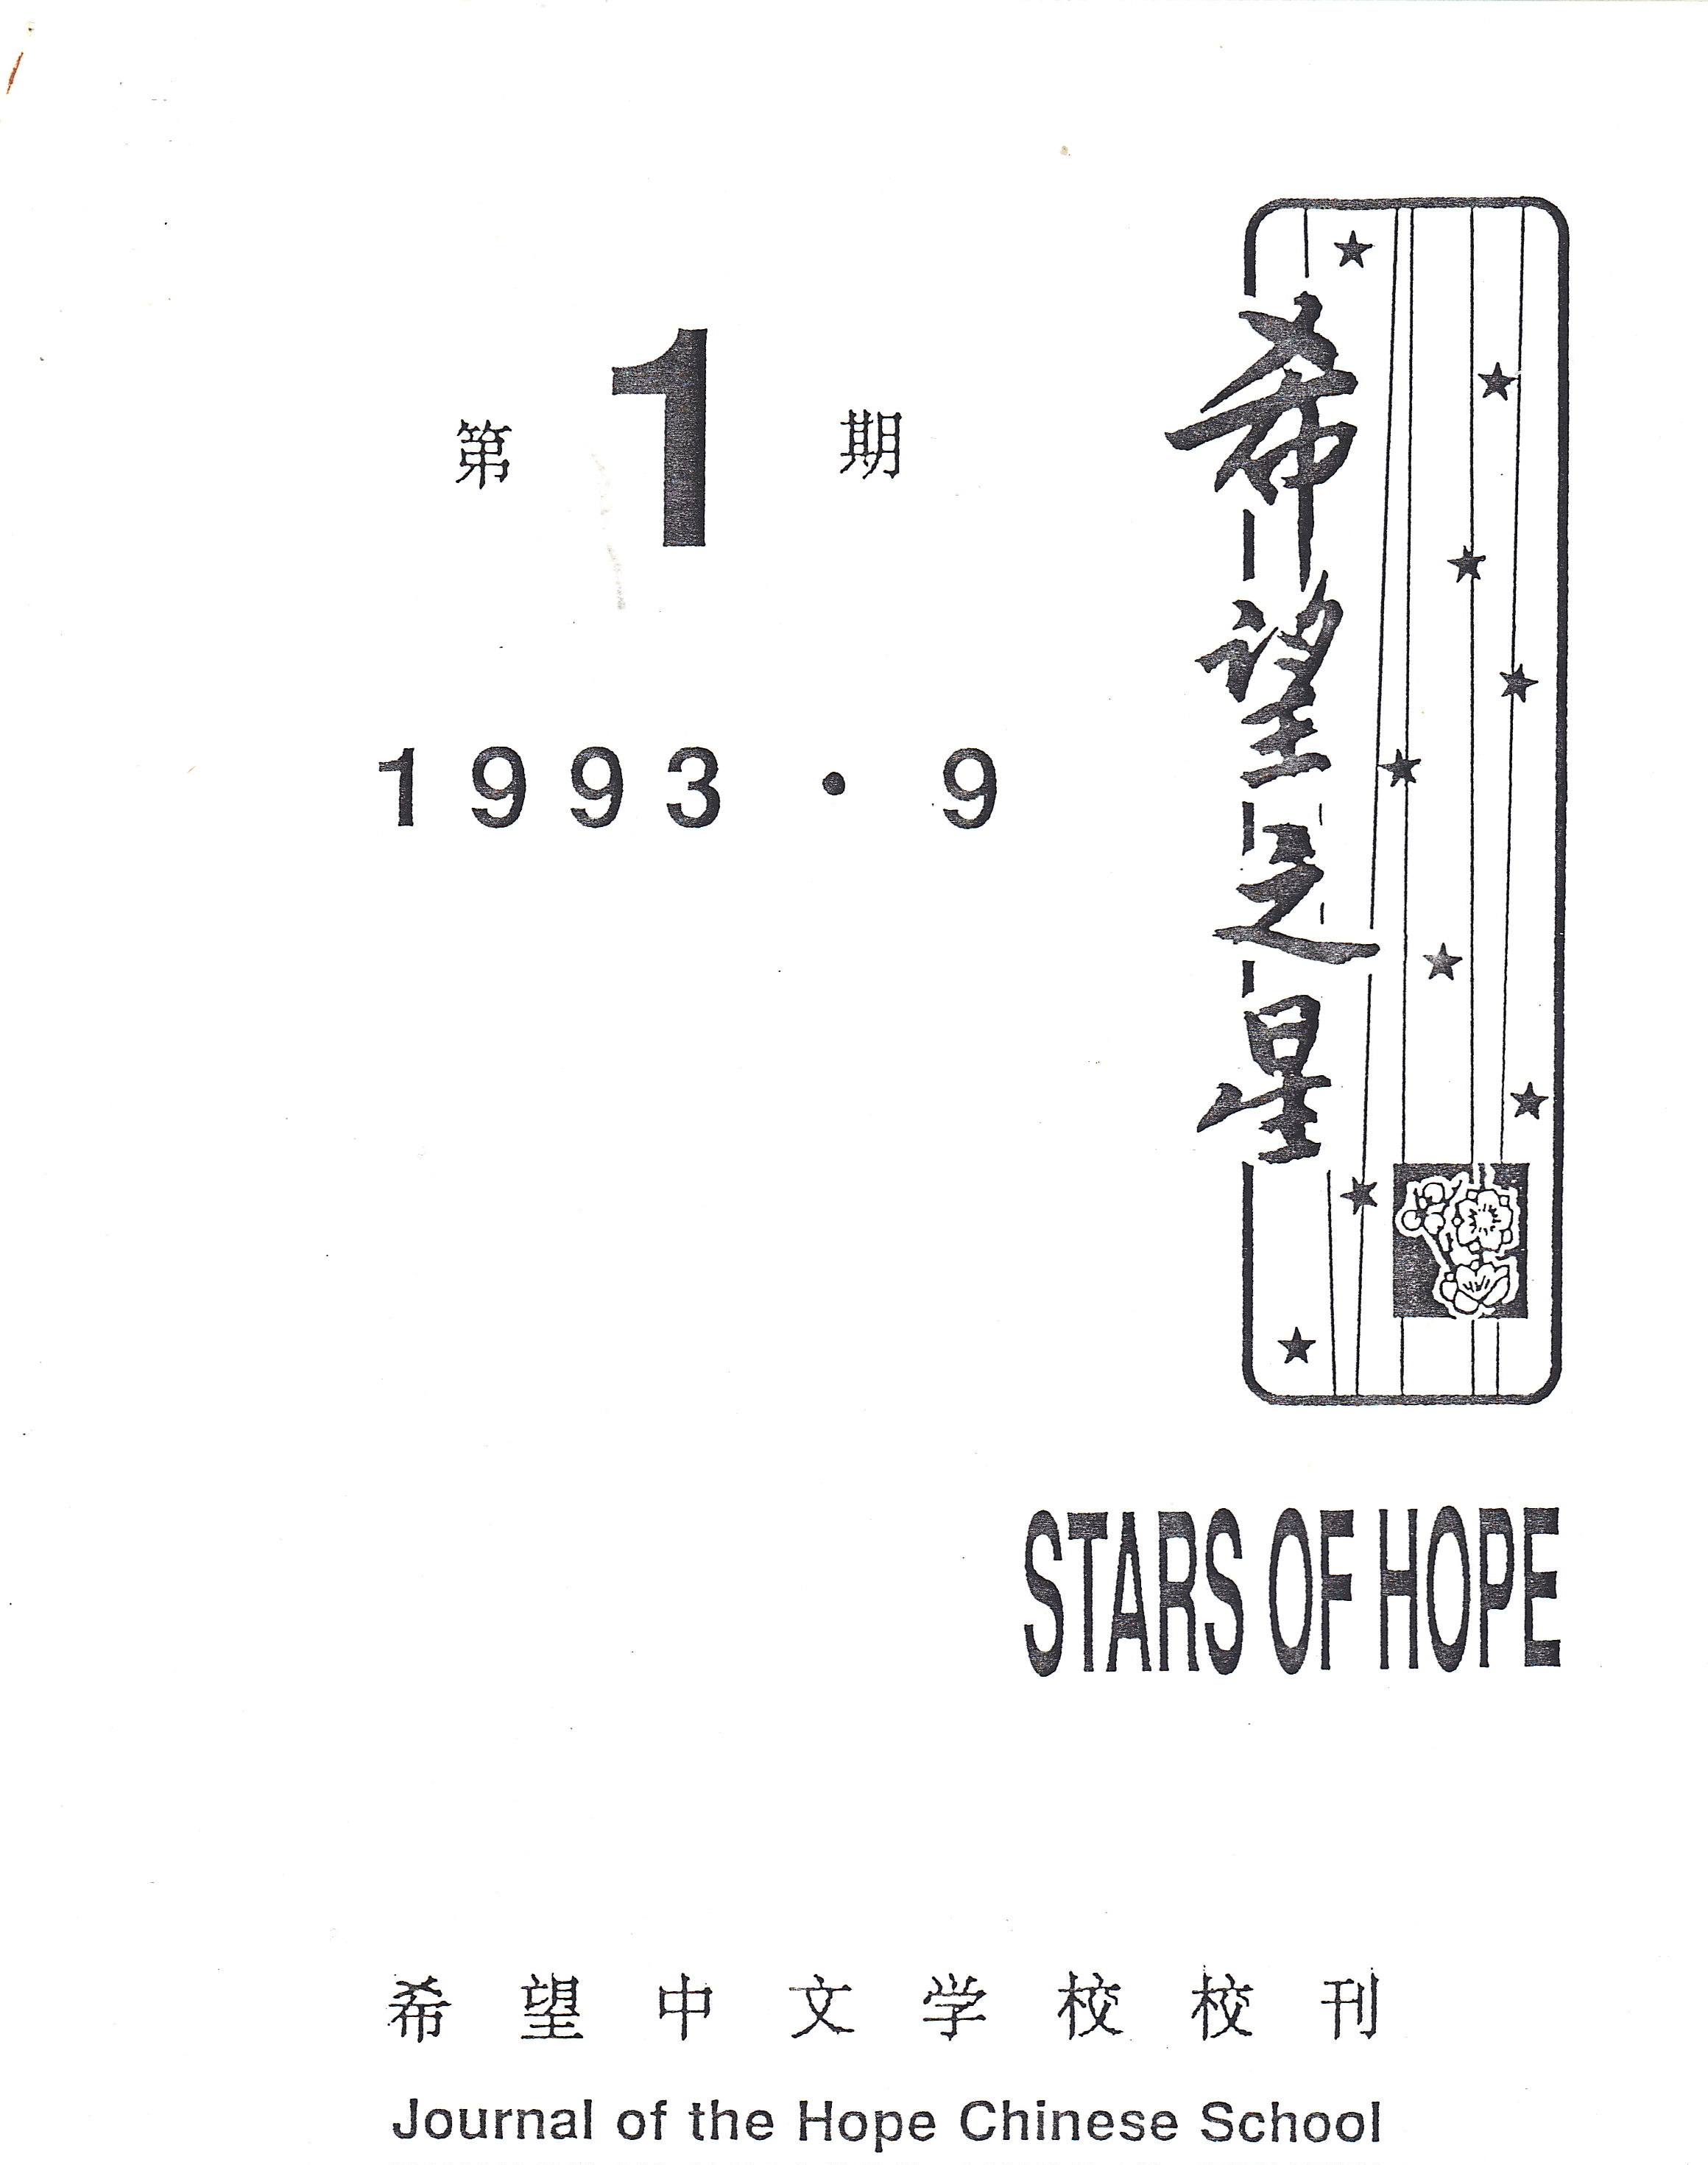 1993希望之星第一期